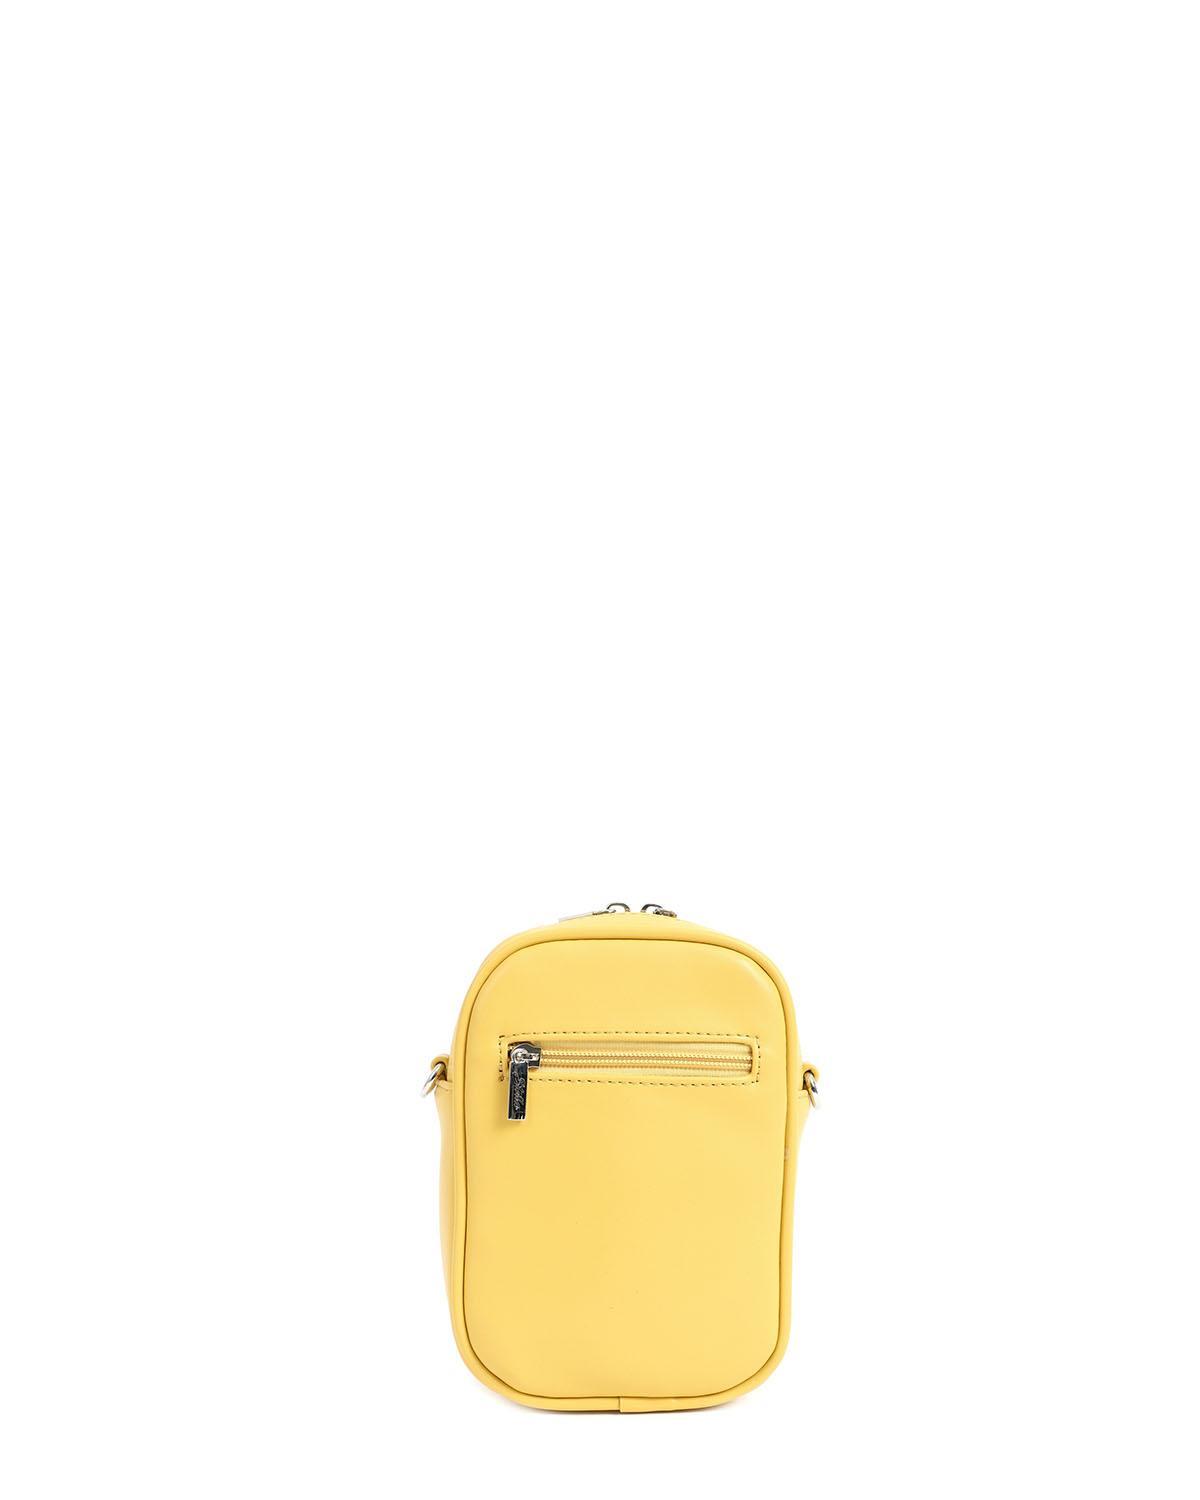 |17248| Τσάντα χιαστί κίτρινη